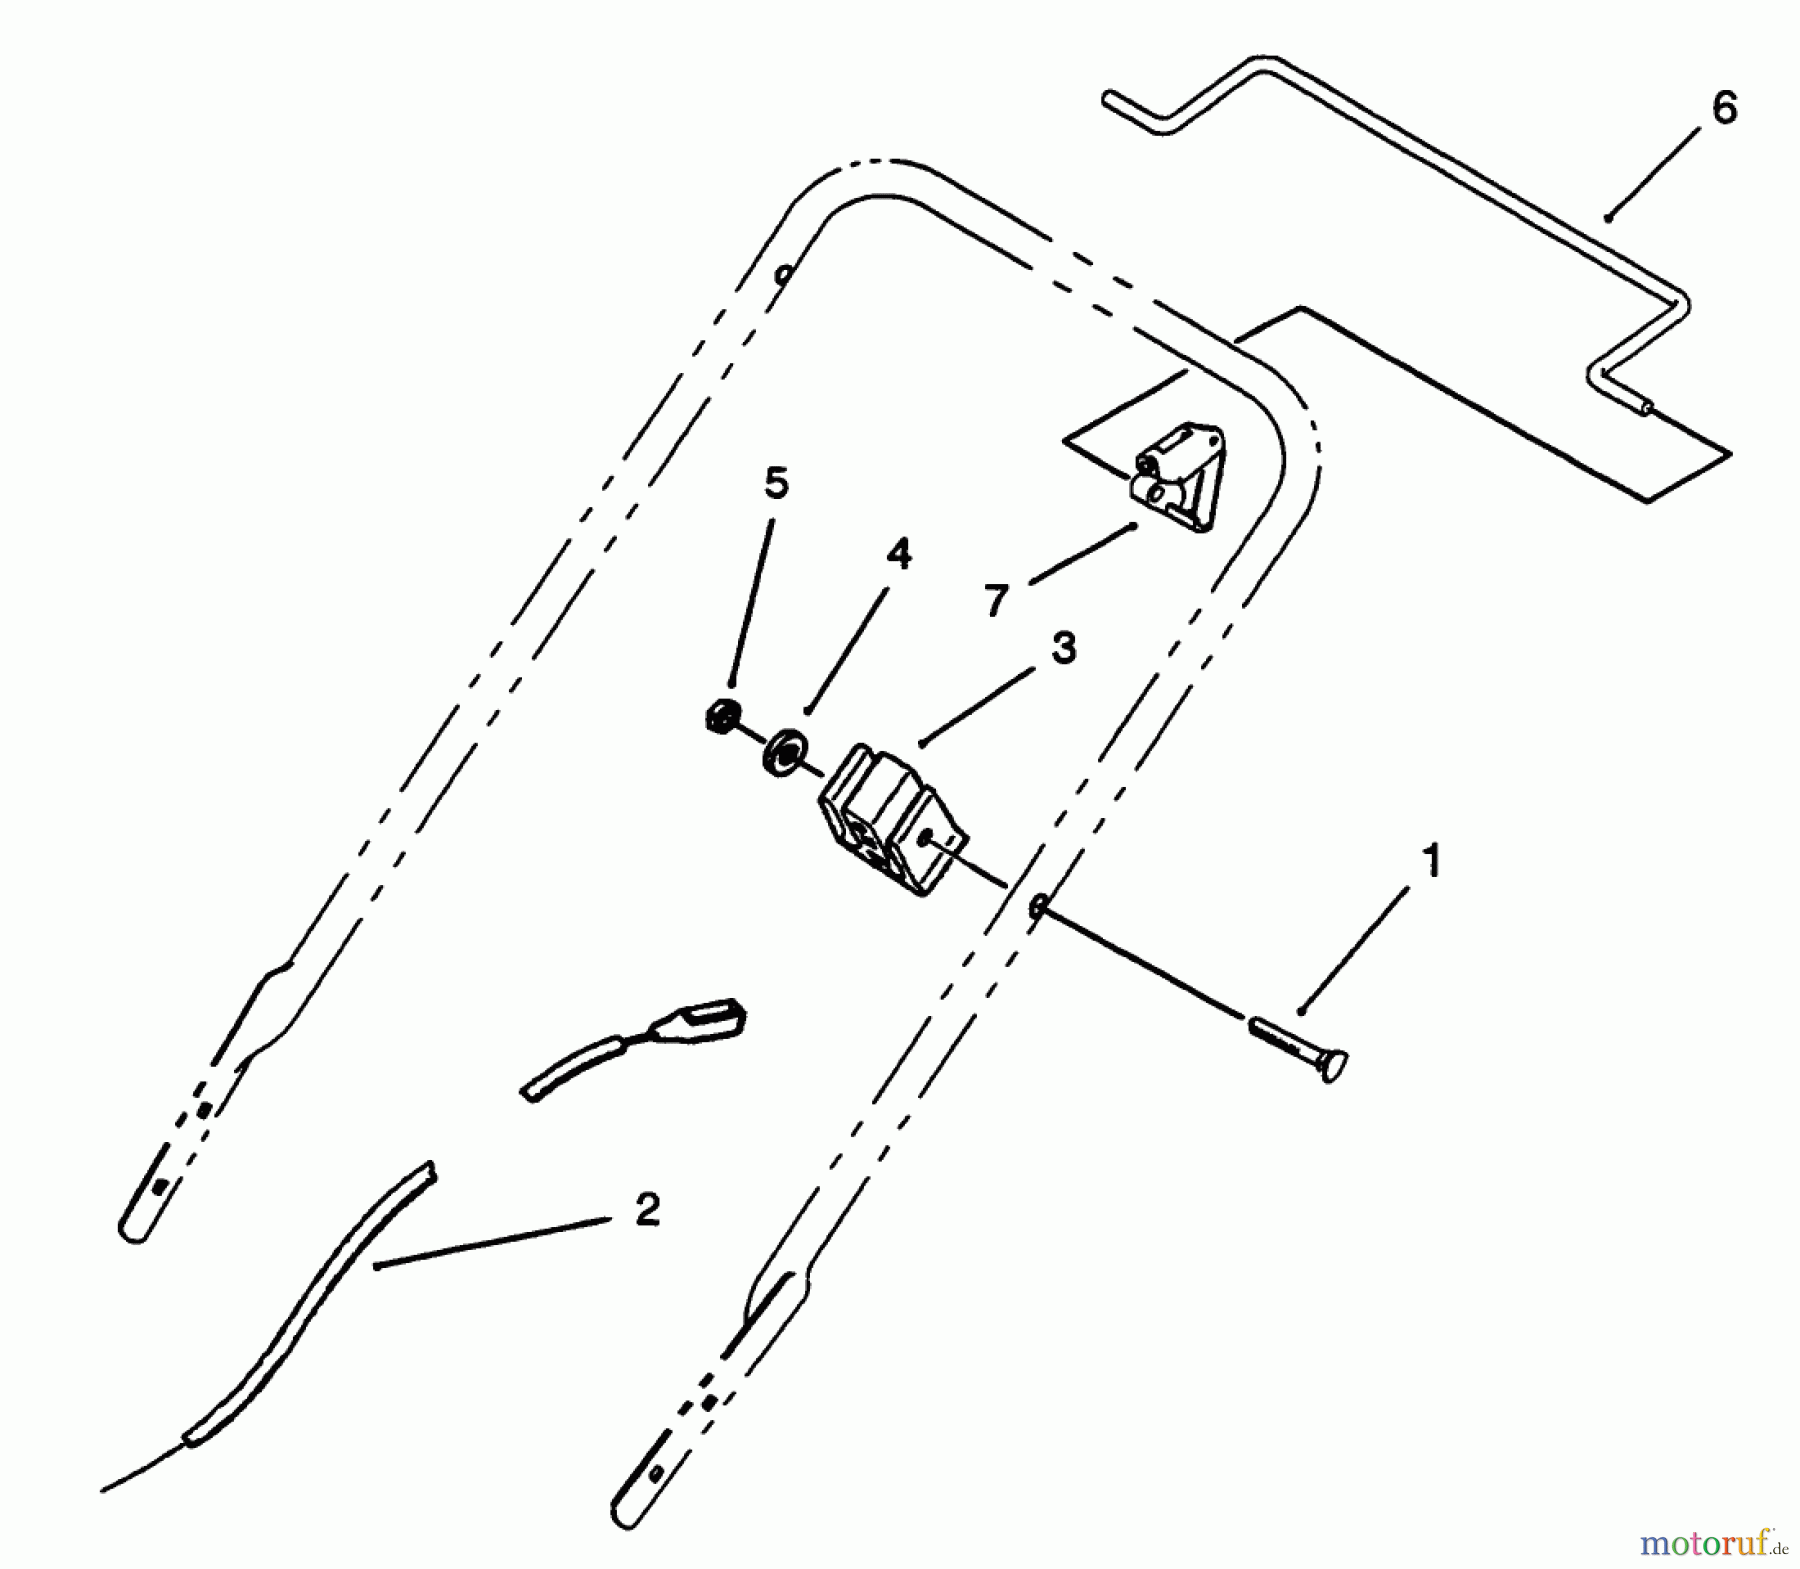  Toro Neu Mowers, Walk-Behind Seite 1 20433 - Toro Lawnmower, 1993 (39000001-39999999) BRAKE CONTROL ASSEMBLY